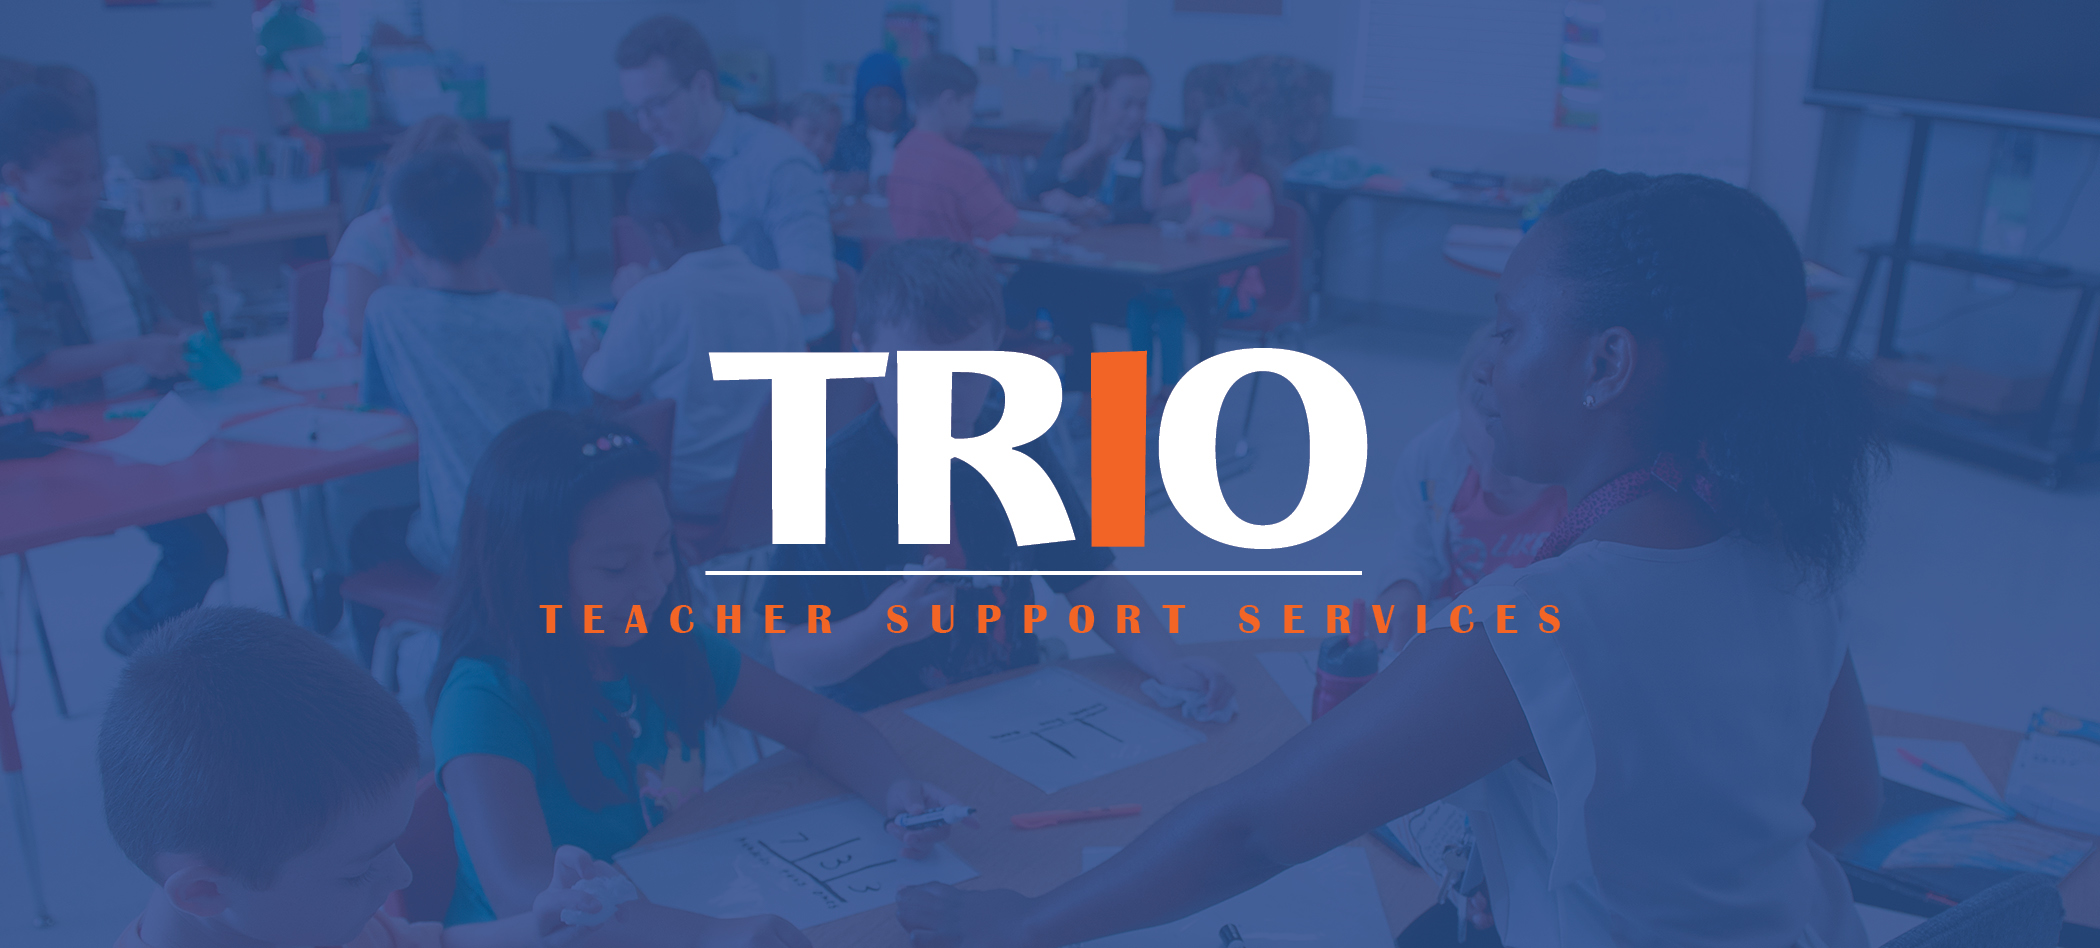 TRiO Teacher Support Services 